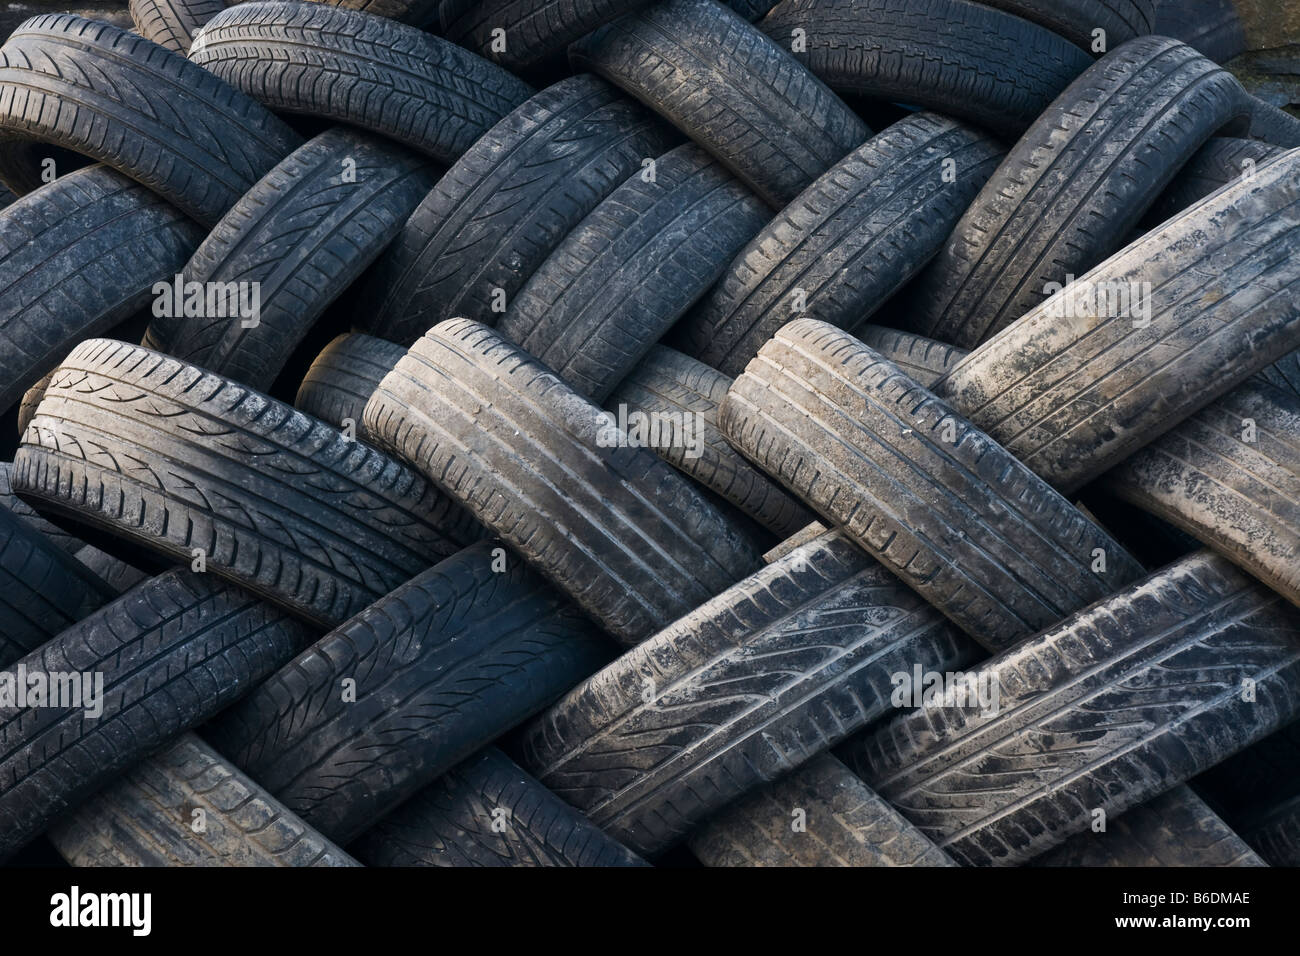 Neumáticos viejos en espera de su eliminación o reciclado Foto de stock